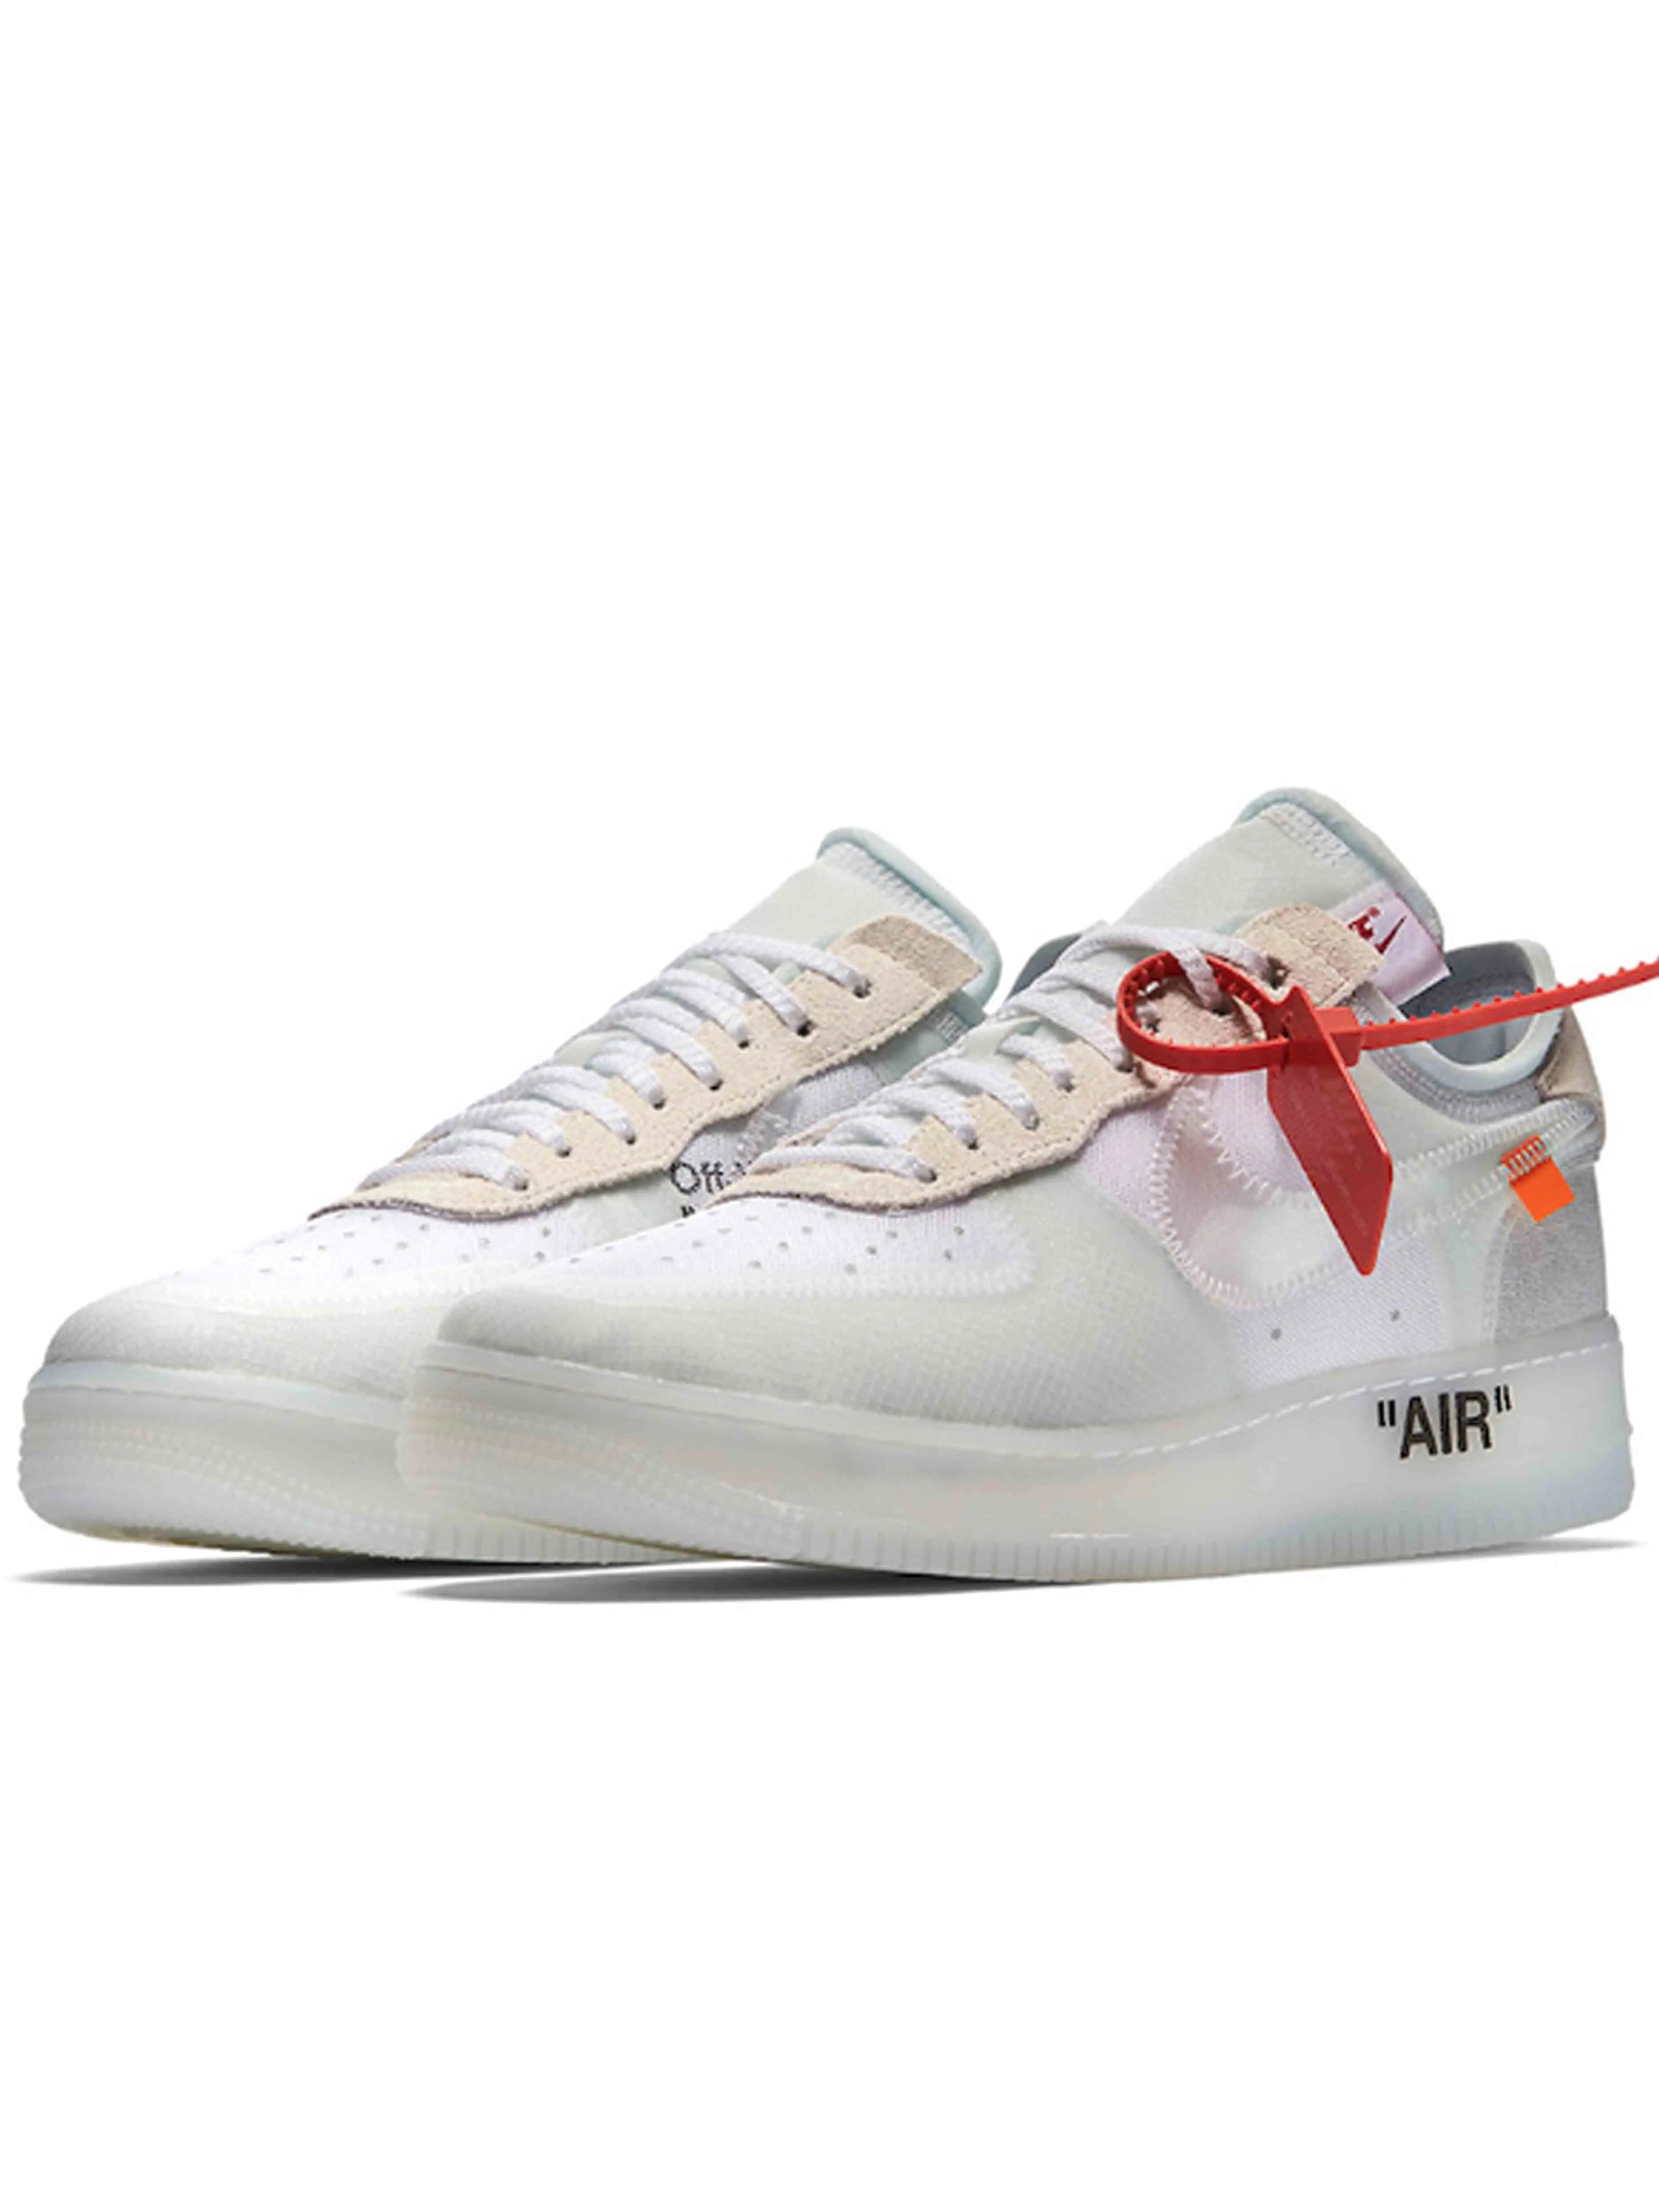 Nike Air Force 1 x Off-White “The Ten” Men's & Women's Shoe